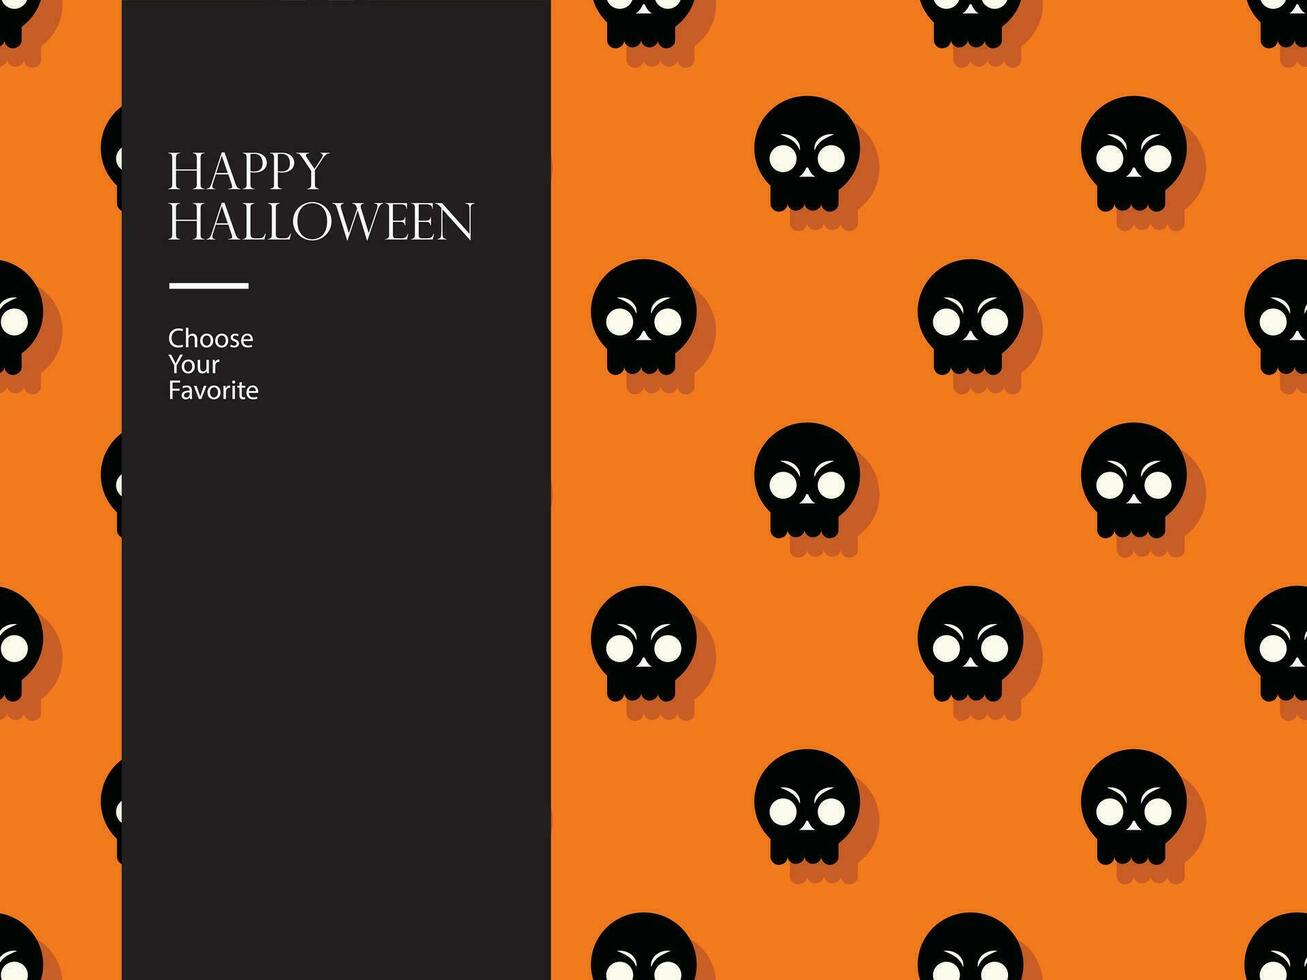 Halloween content vecteur élément horreur octobre dessin animé mal hanté citrouille inviter fête monstre art